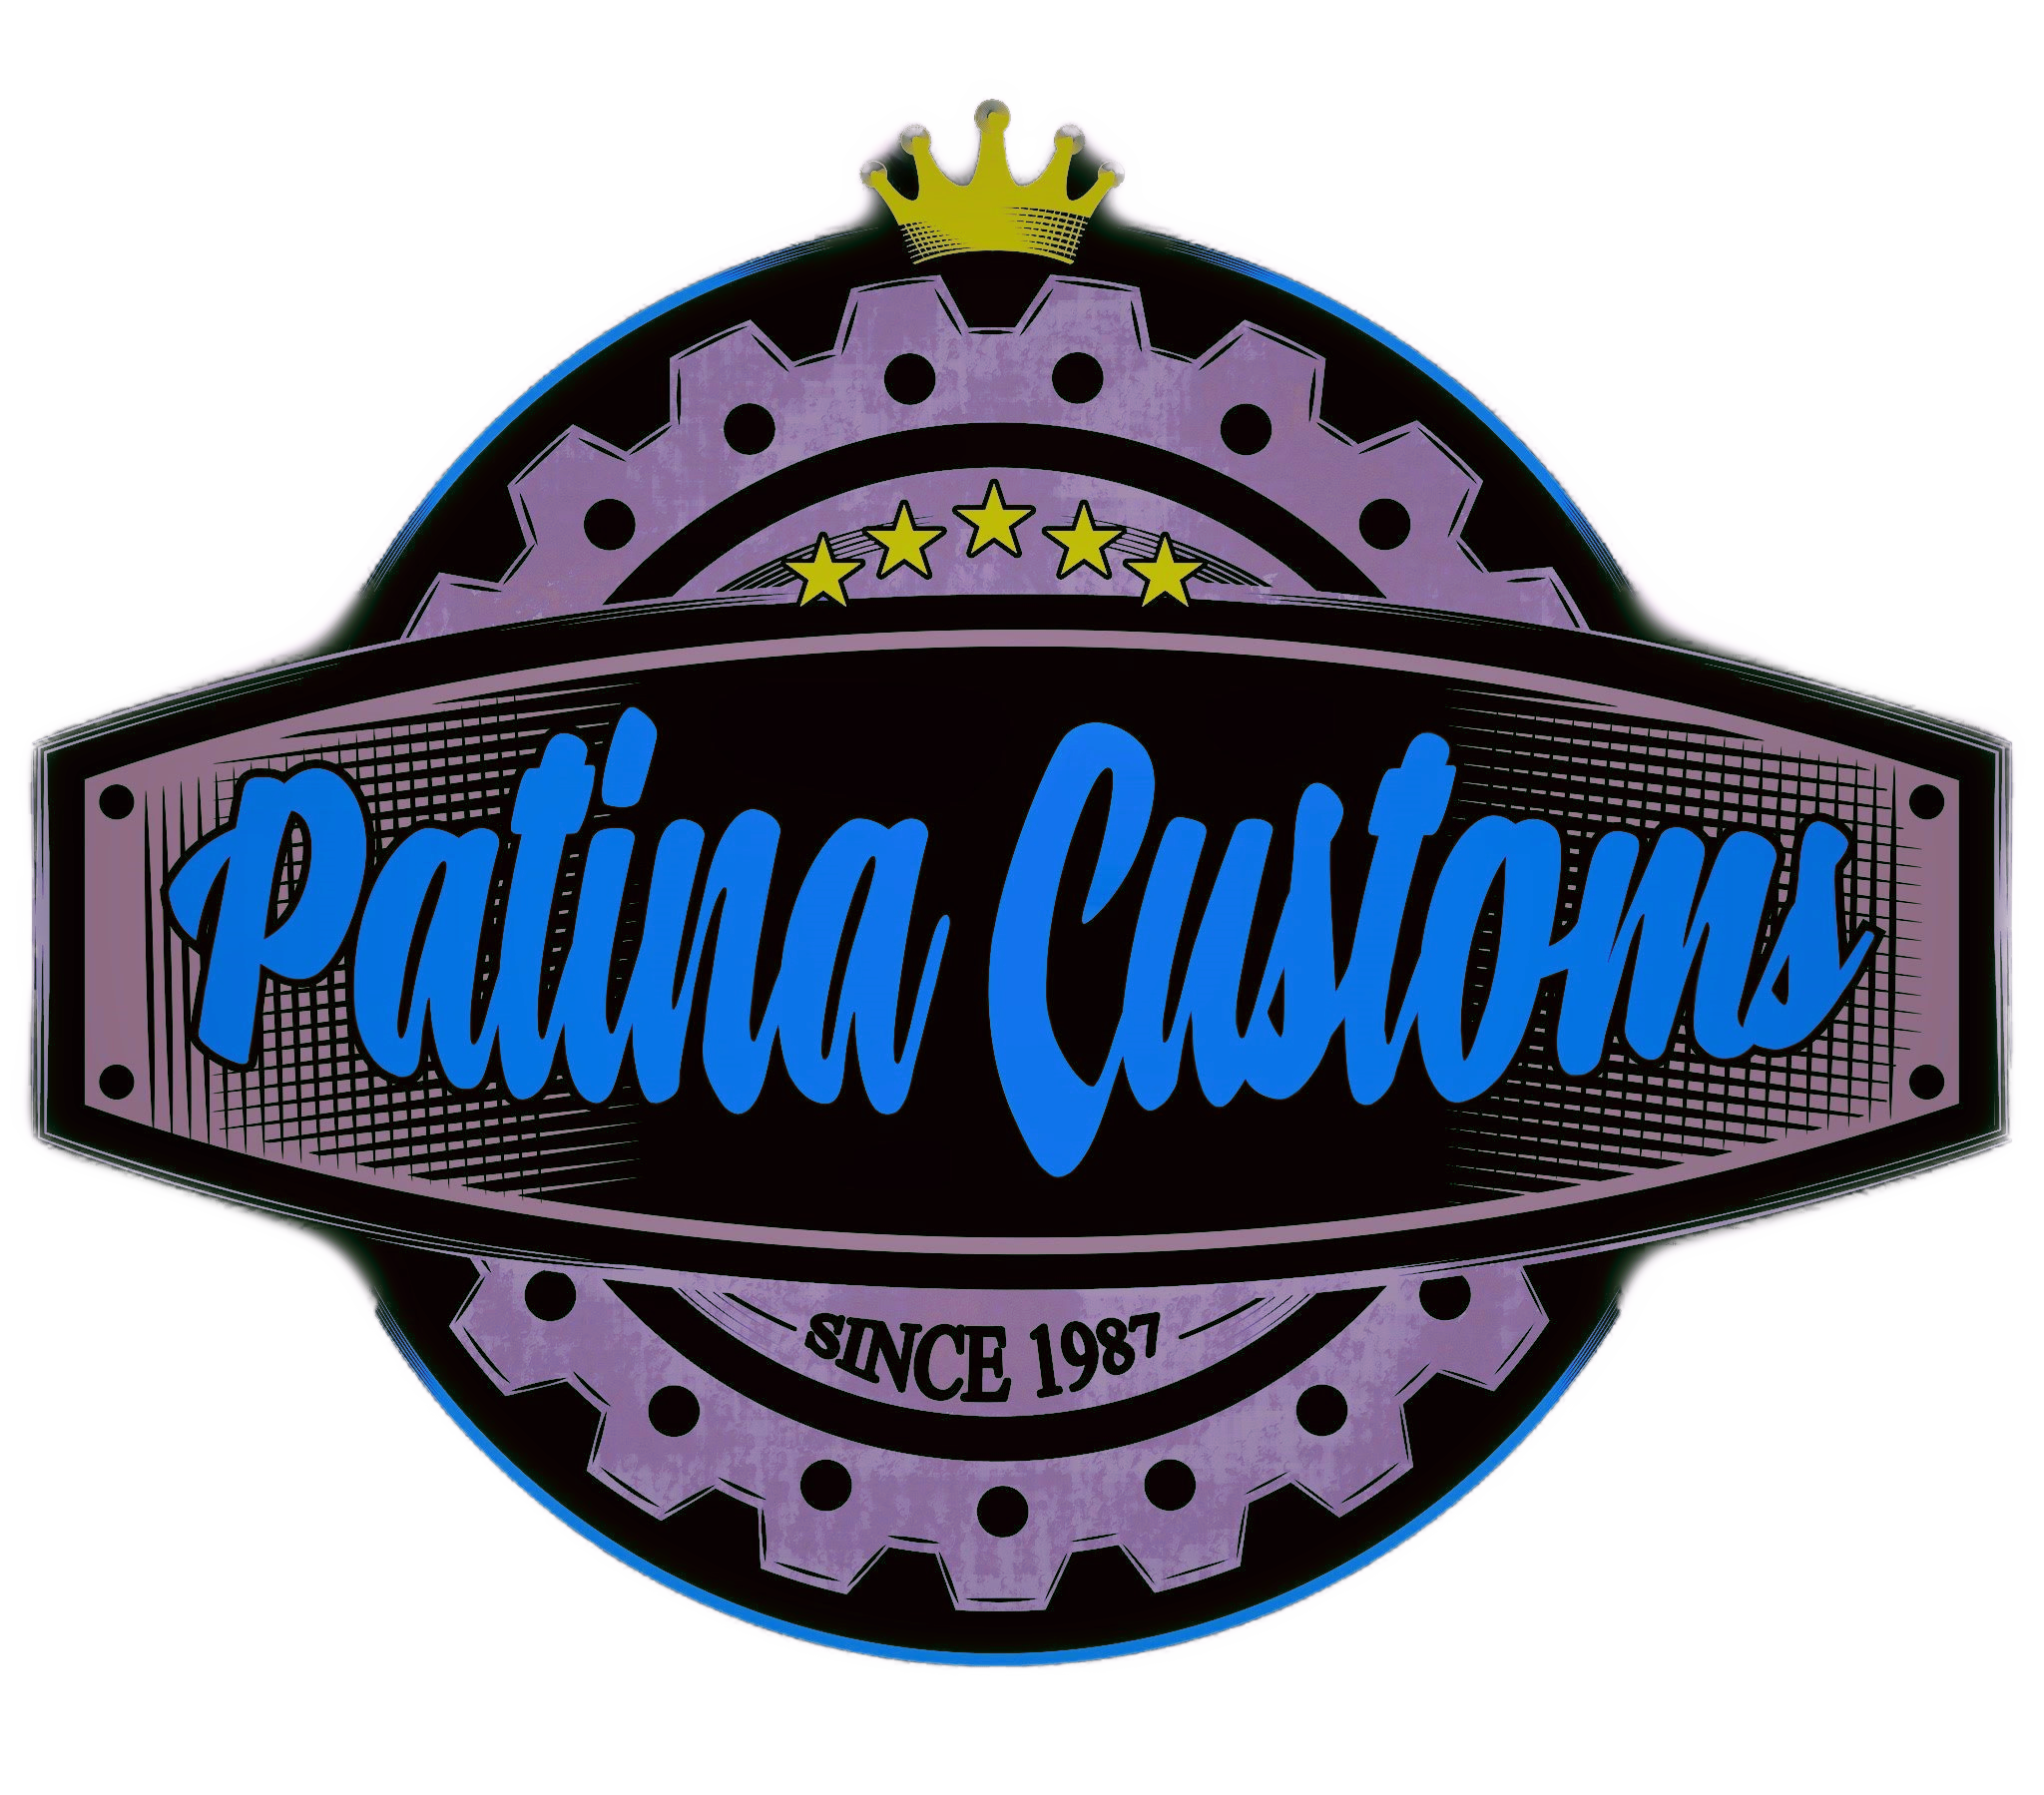 Patina Customs